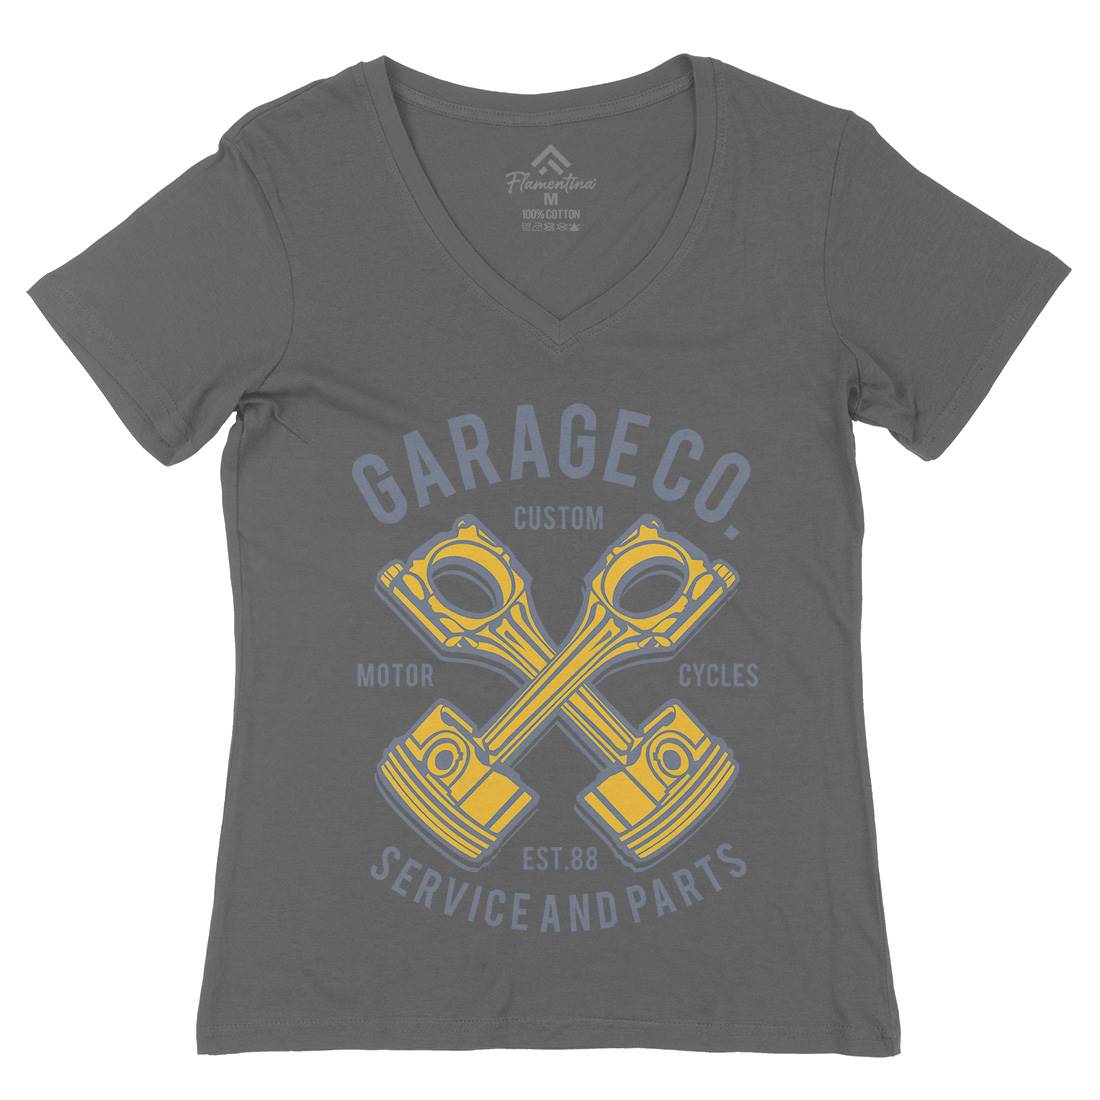 Garage Co Womens Organic V-Neck T-Shirt Cars B216